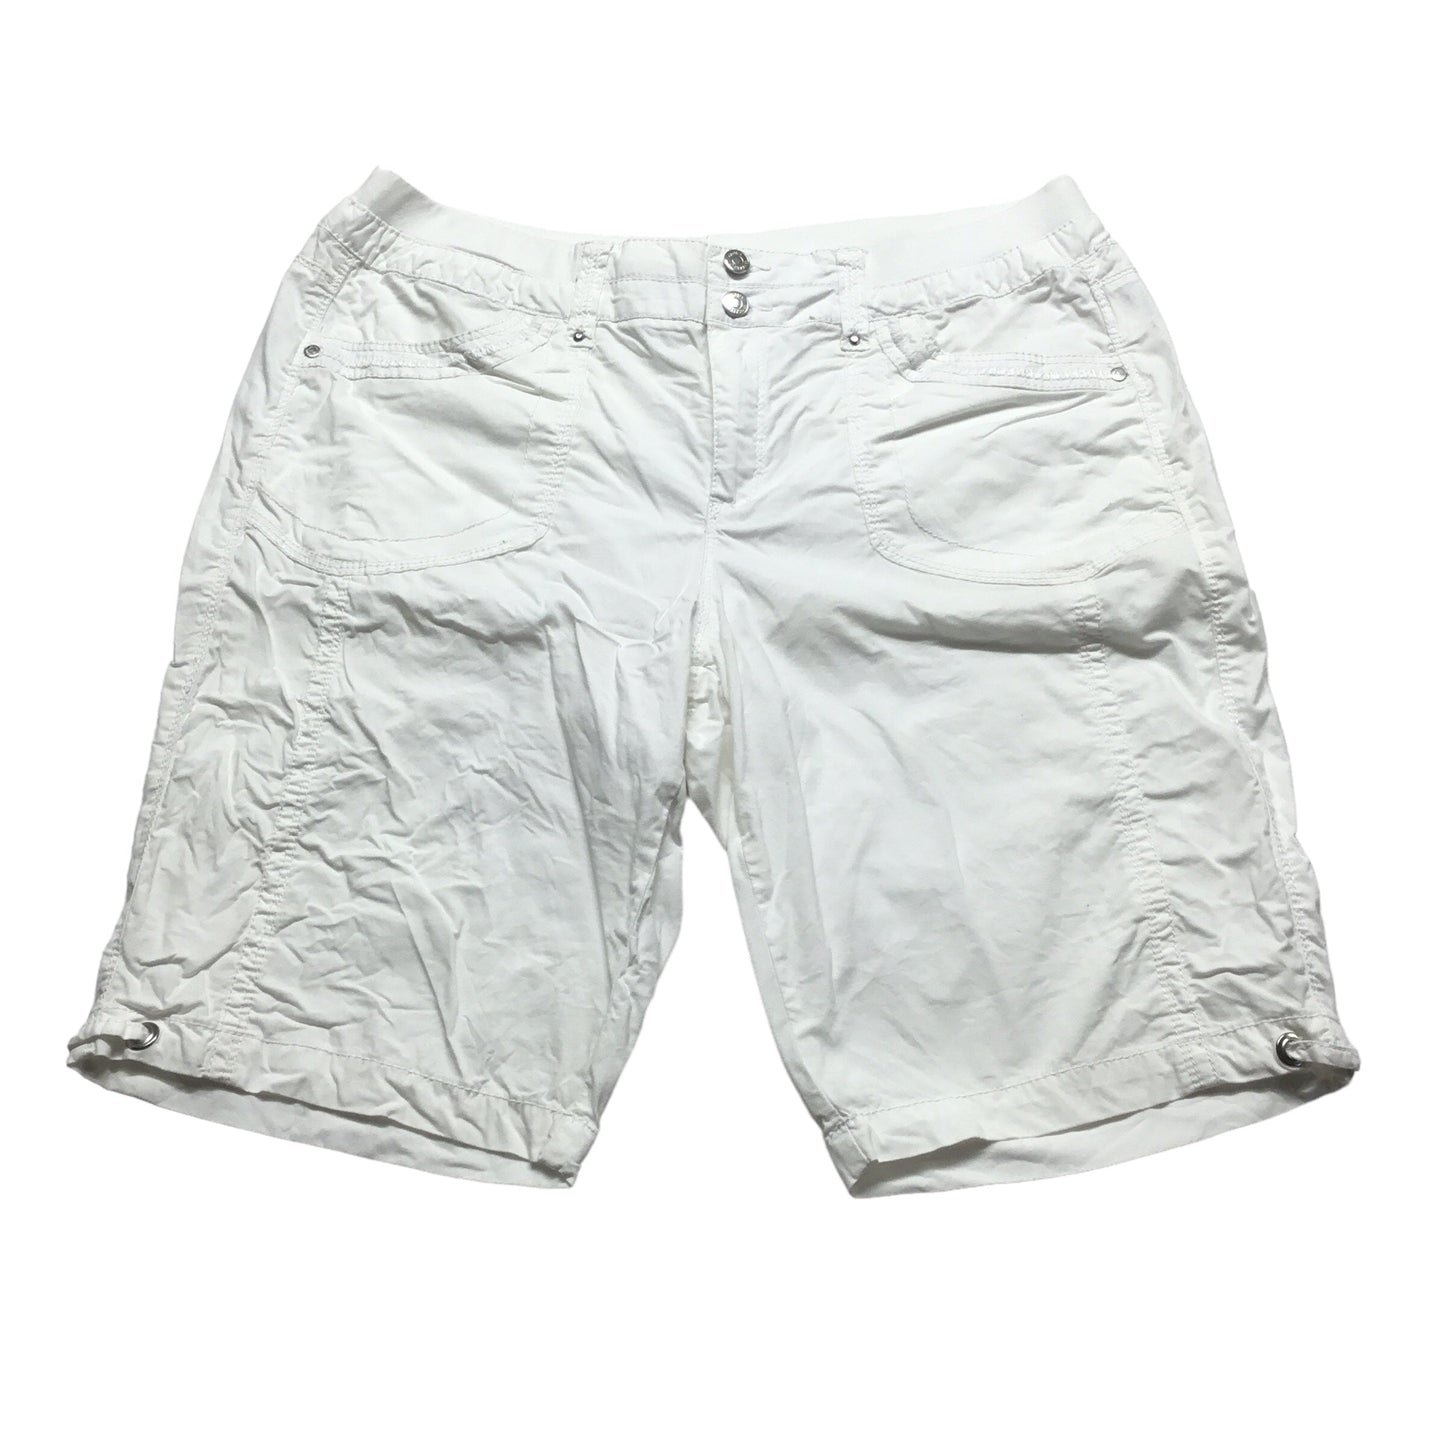 White Shorts Gloria Vanderbilt, Size 10